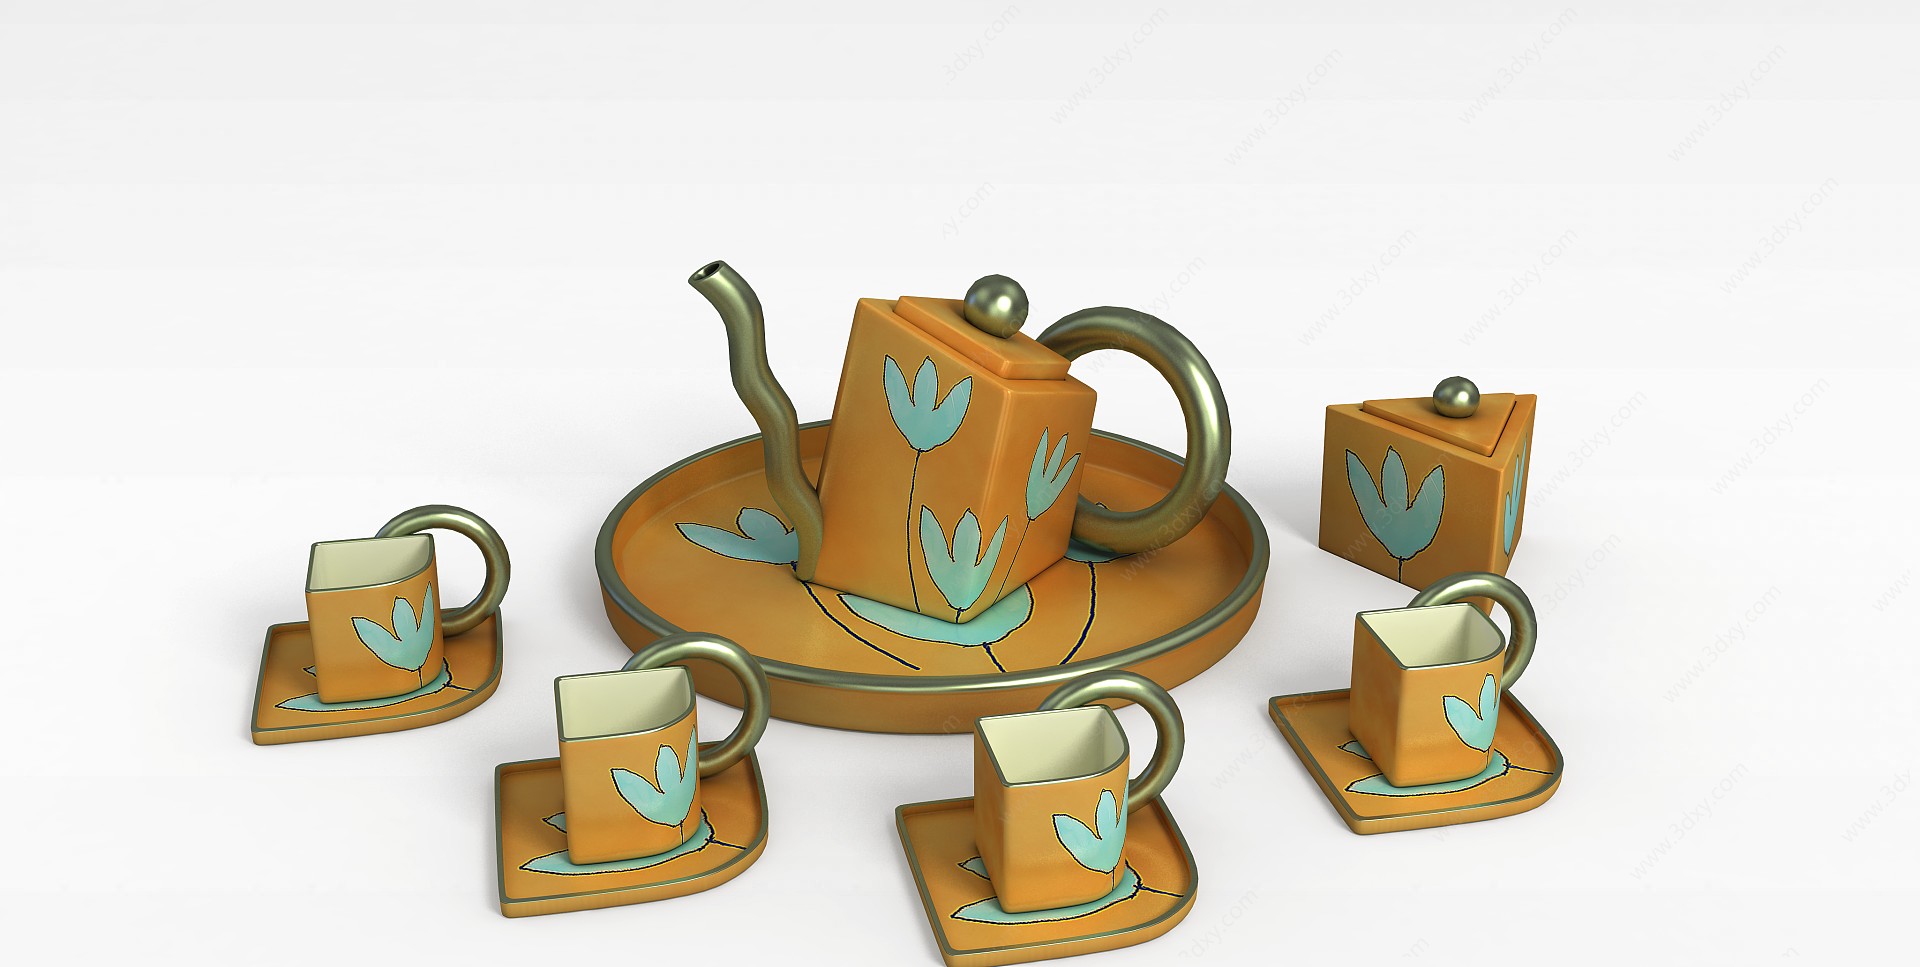 精美茶具3D模型